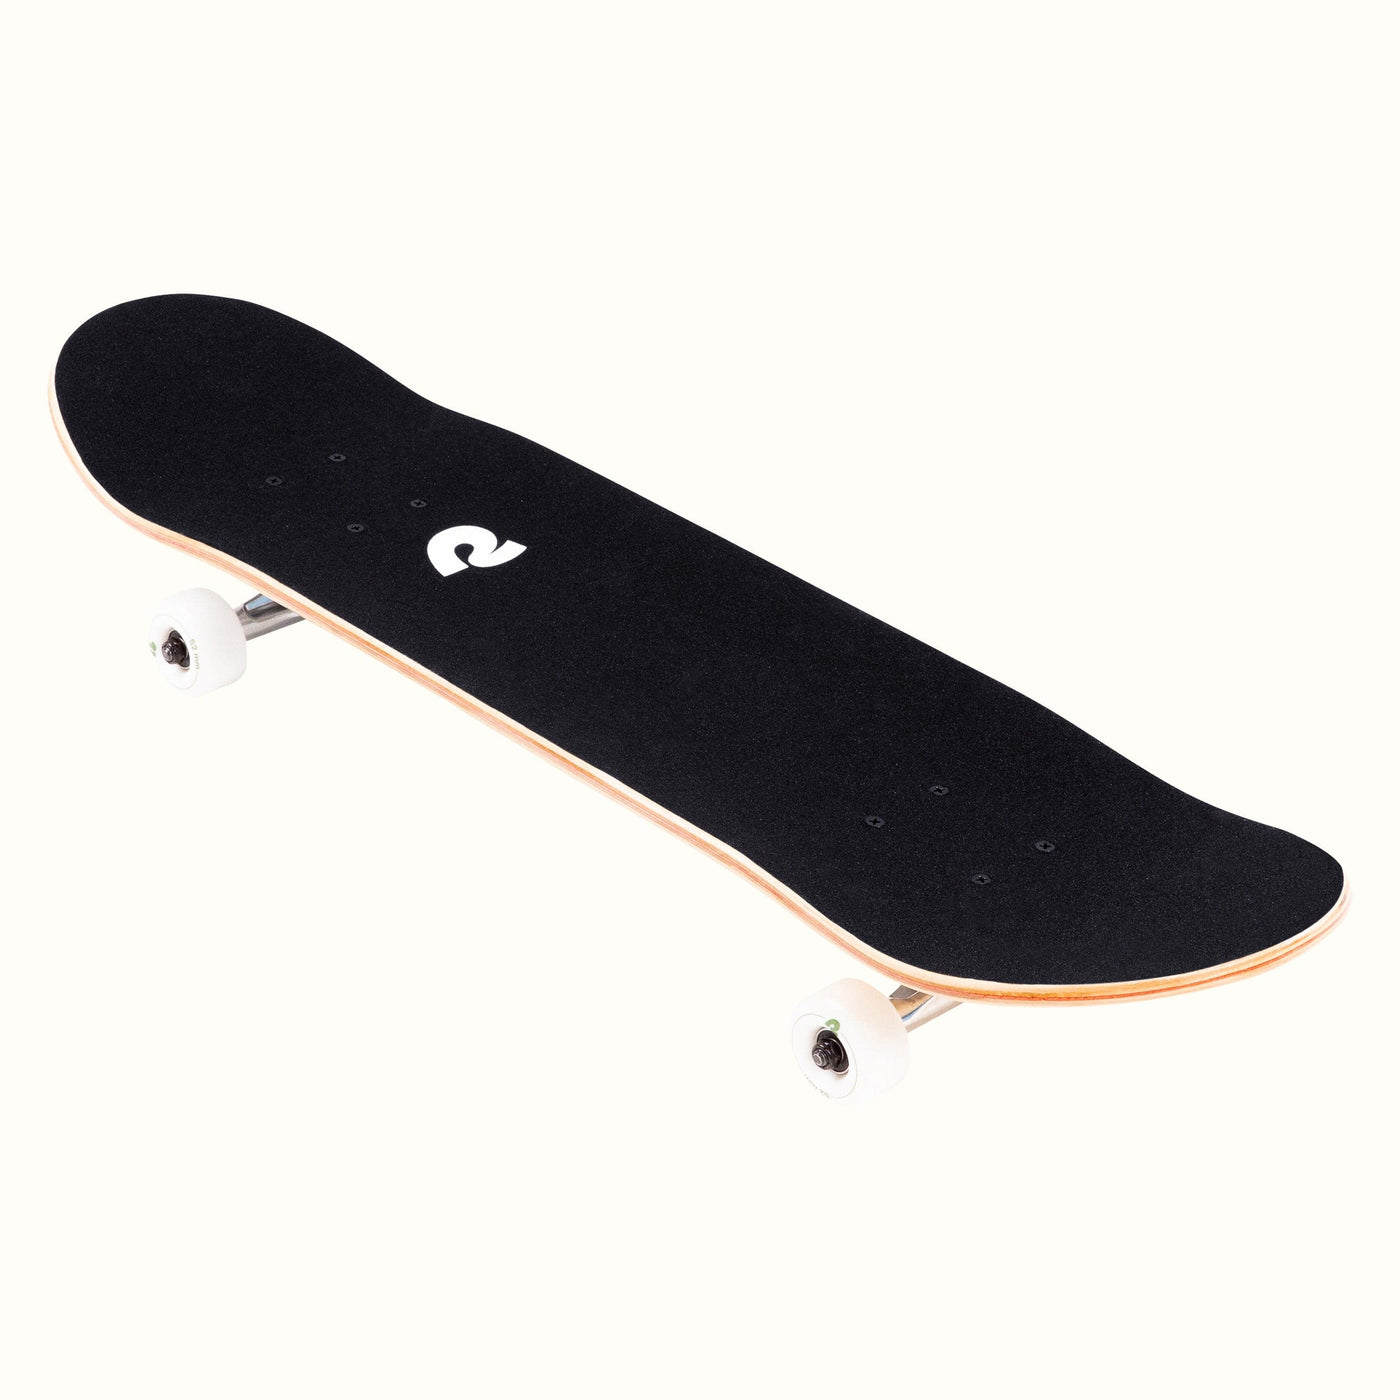 Alameda Skateboard Malibu Palm | Malibu Palm